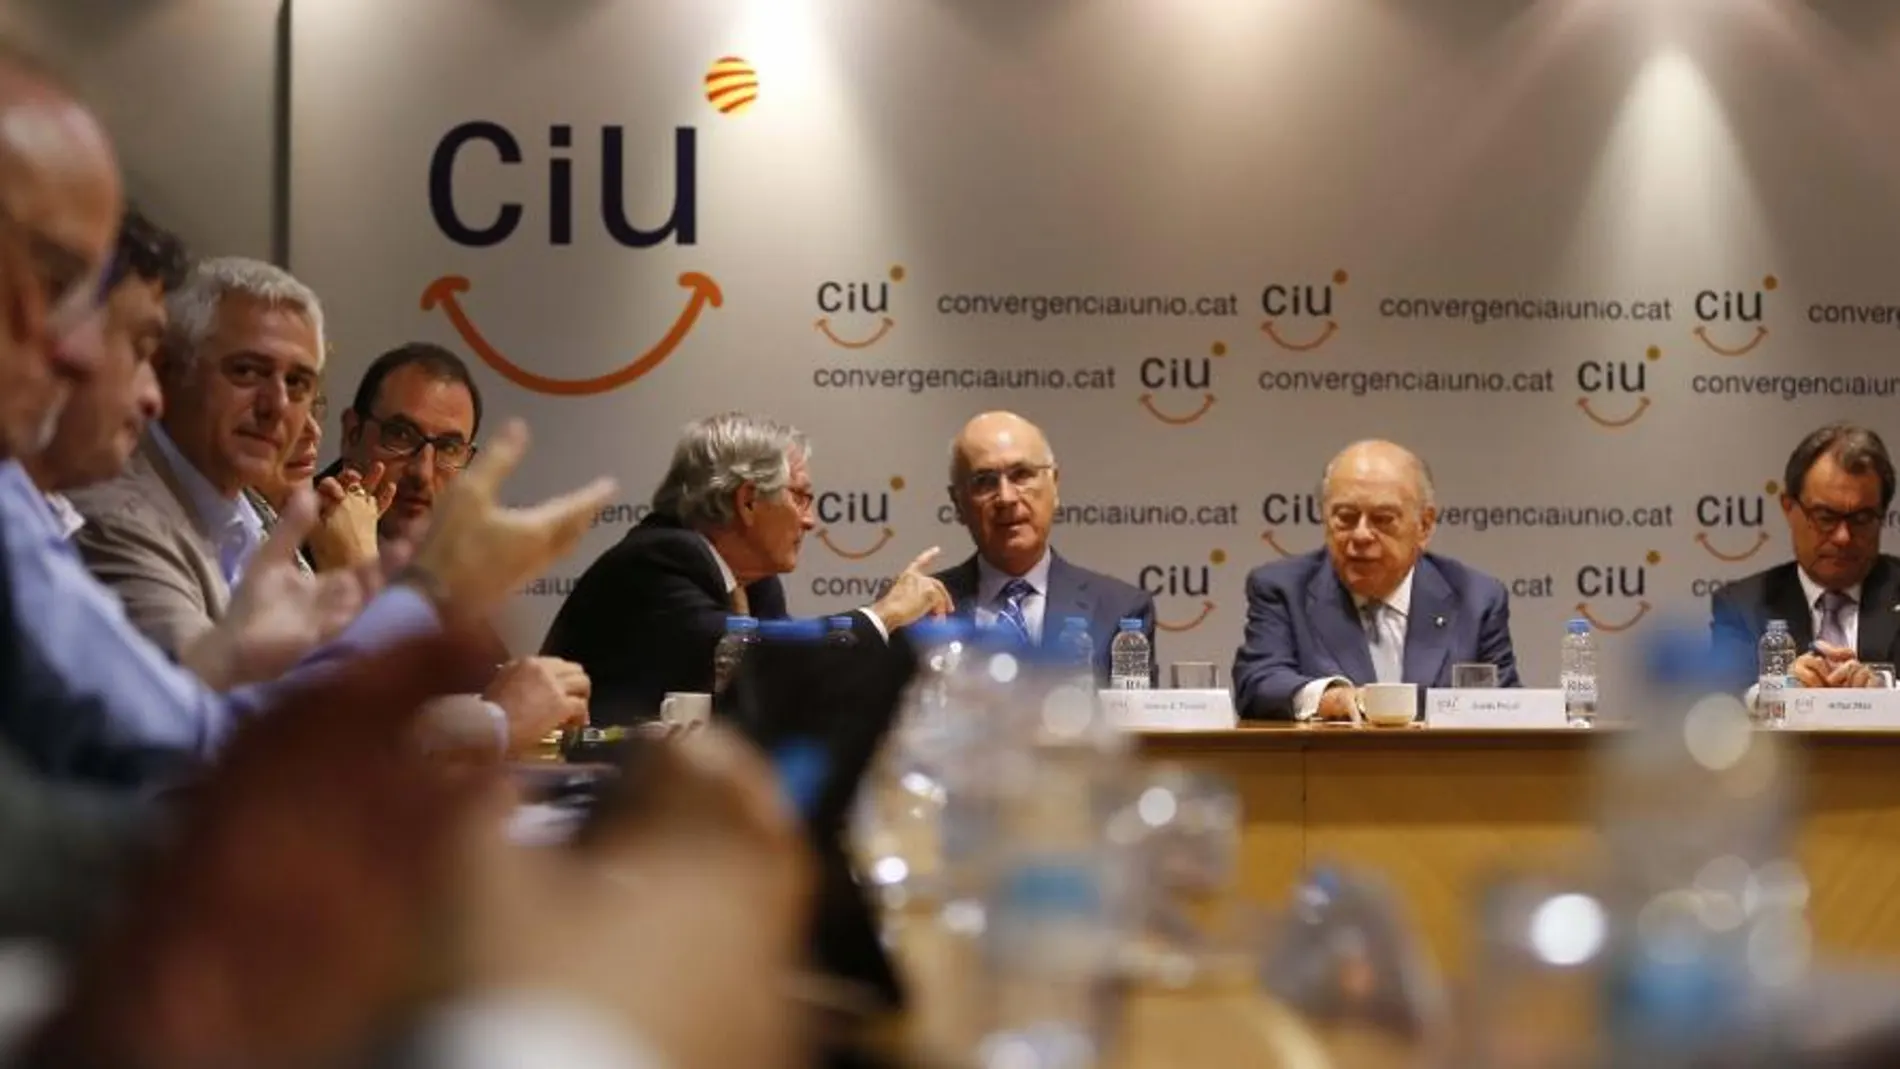 Duran deja la secretaría general de CiU sin explicar los motivos de su decisión